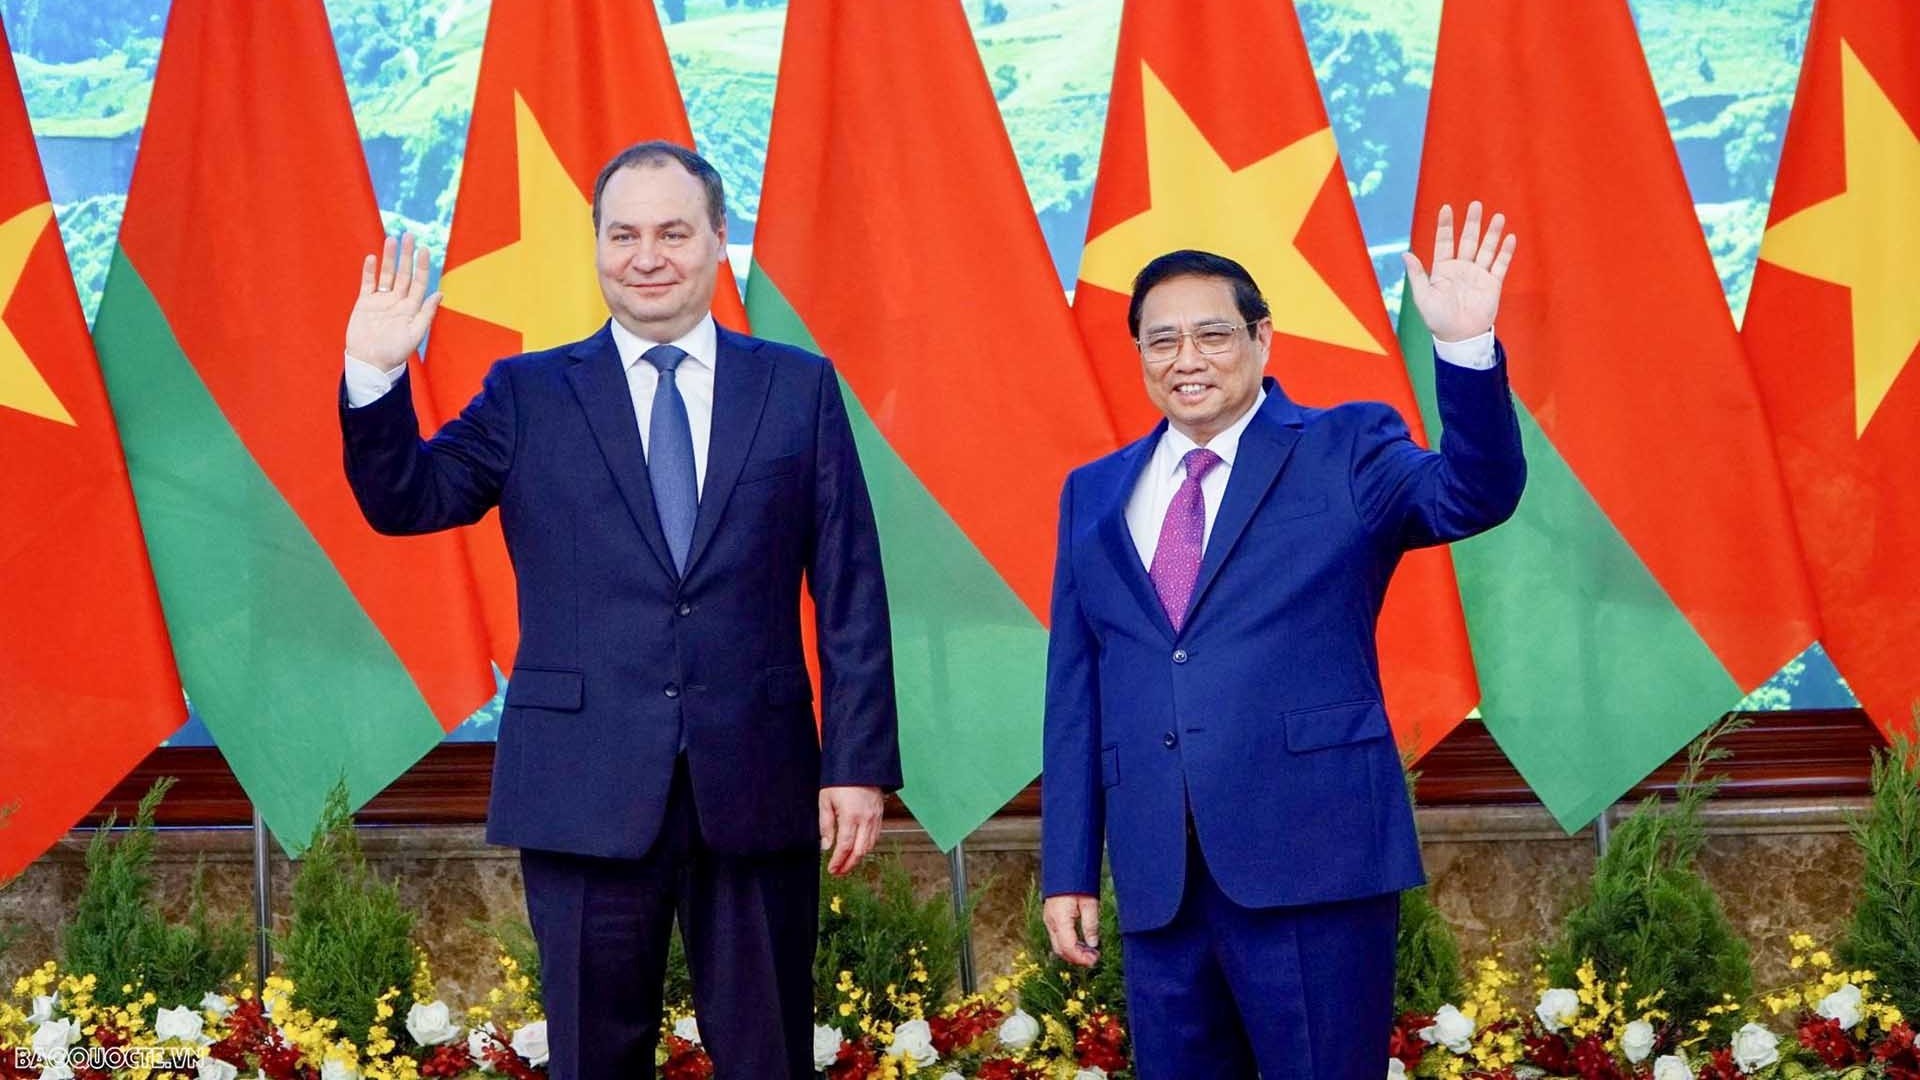 Thủ tướng Roman Golovchenko: Việt Nam là đối tác ưu tiên của Belarus tại khu vực Đông Nam Á